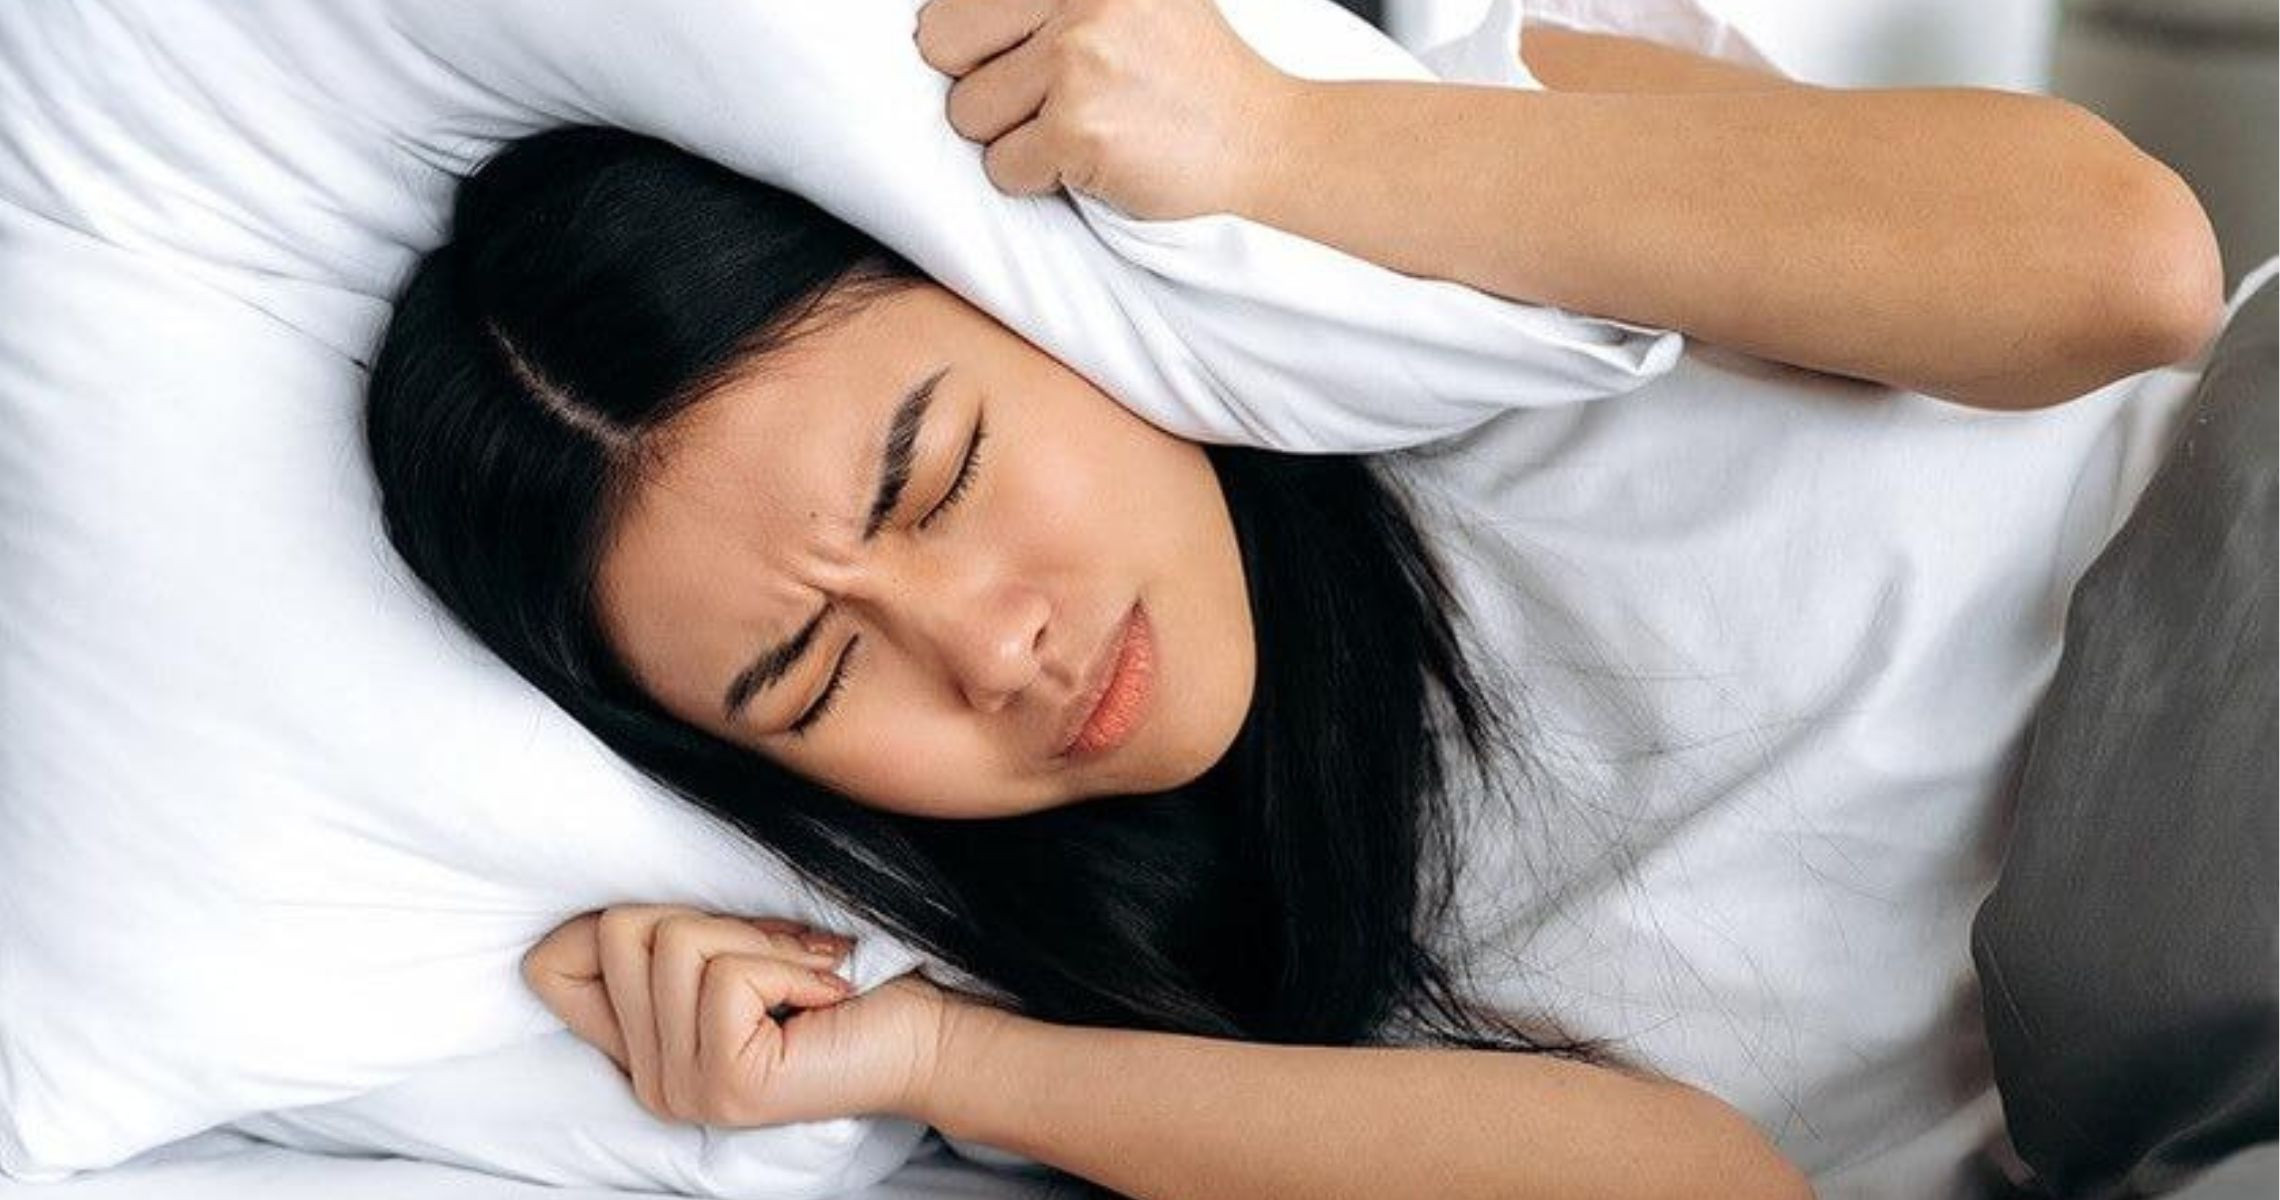 Bị mất ngủ do thiếu chất gì lâu ngày?